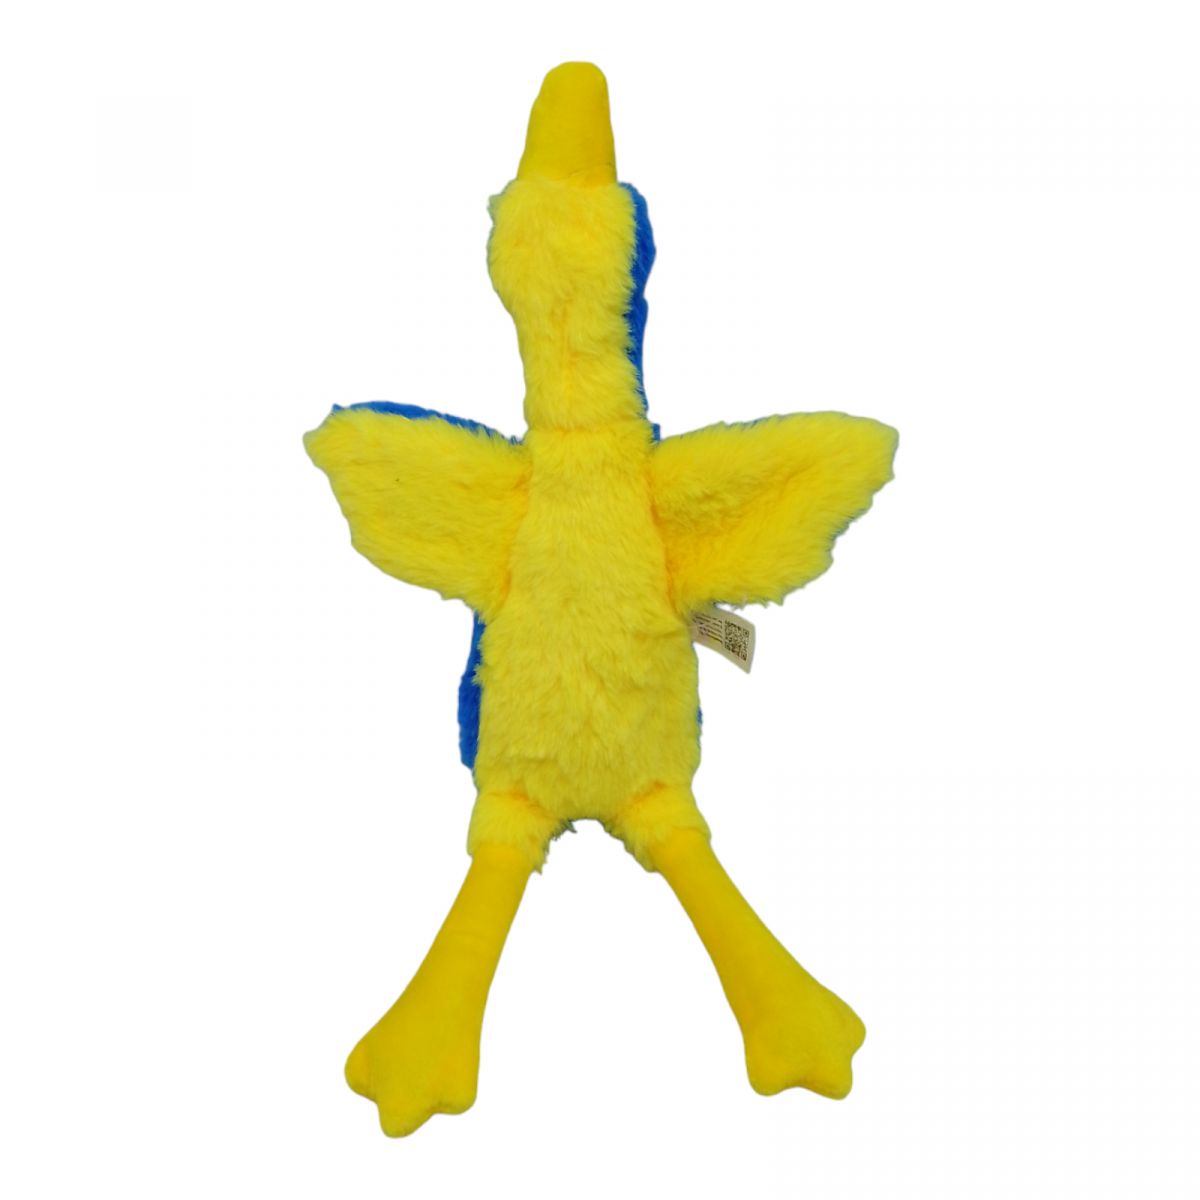 Мягкая игрушка "Гусь-обнимусь", 40 см, патриот, музыкальный, желто-голубой